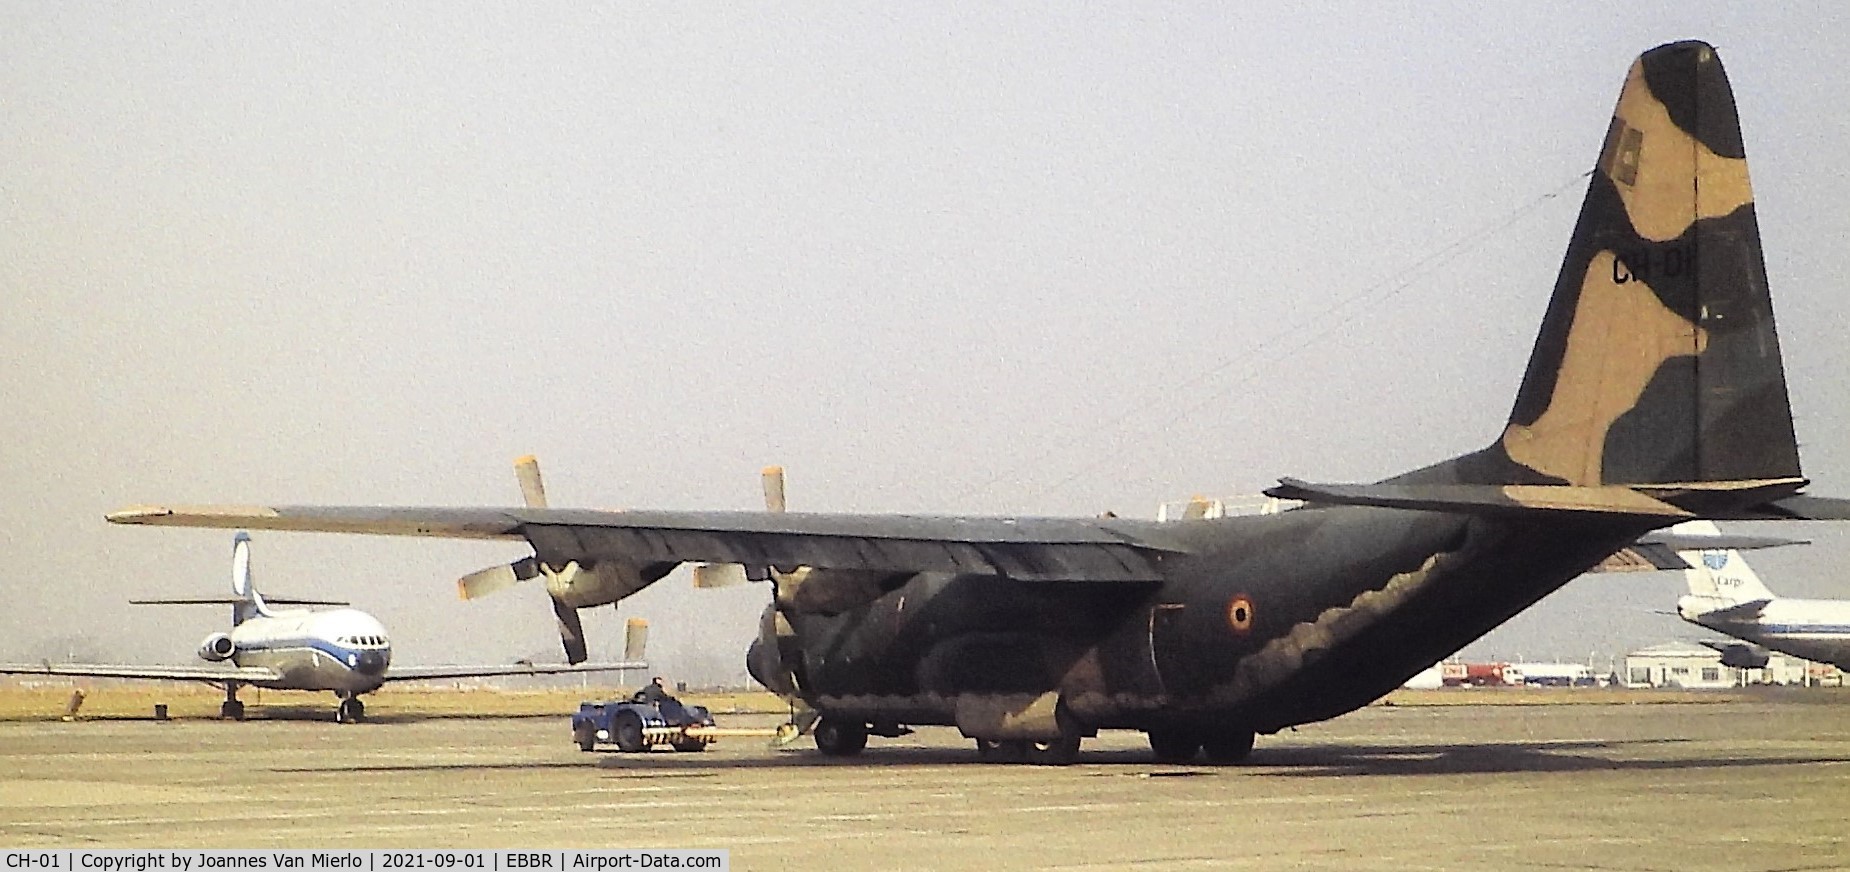 CH-01, 1971 Lockheed C-130H Hercules C/N 382-4455, Slide scan